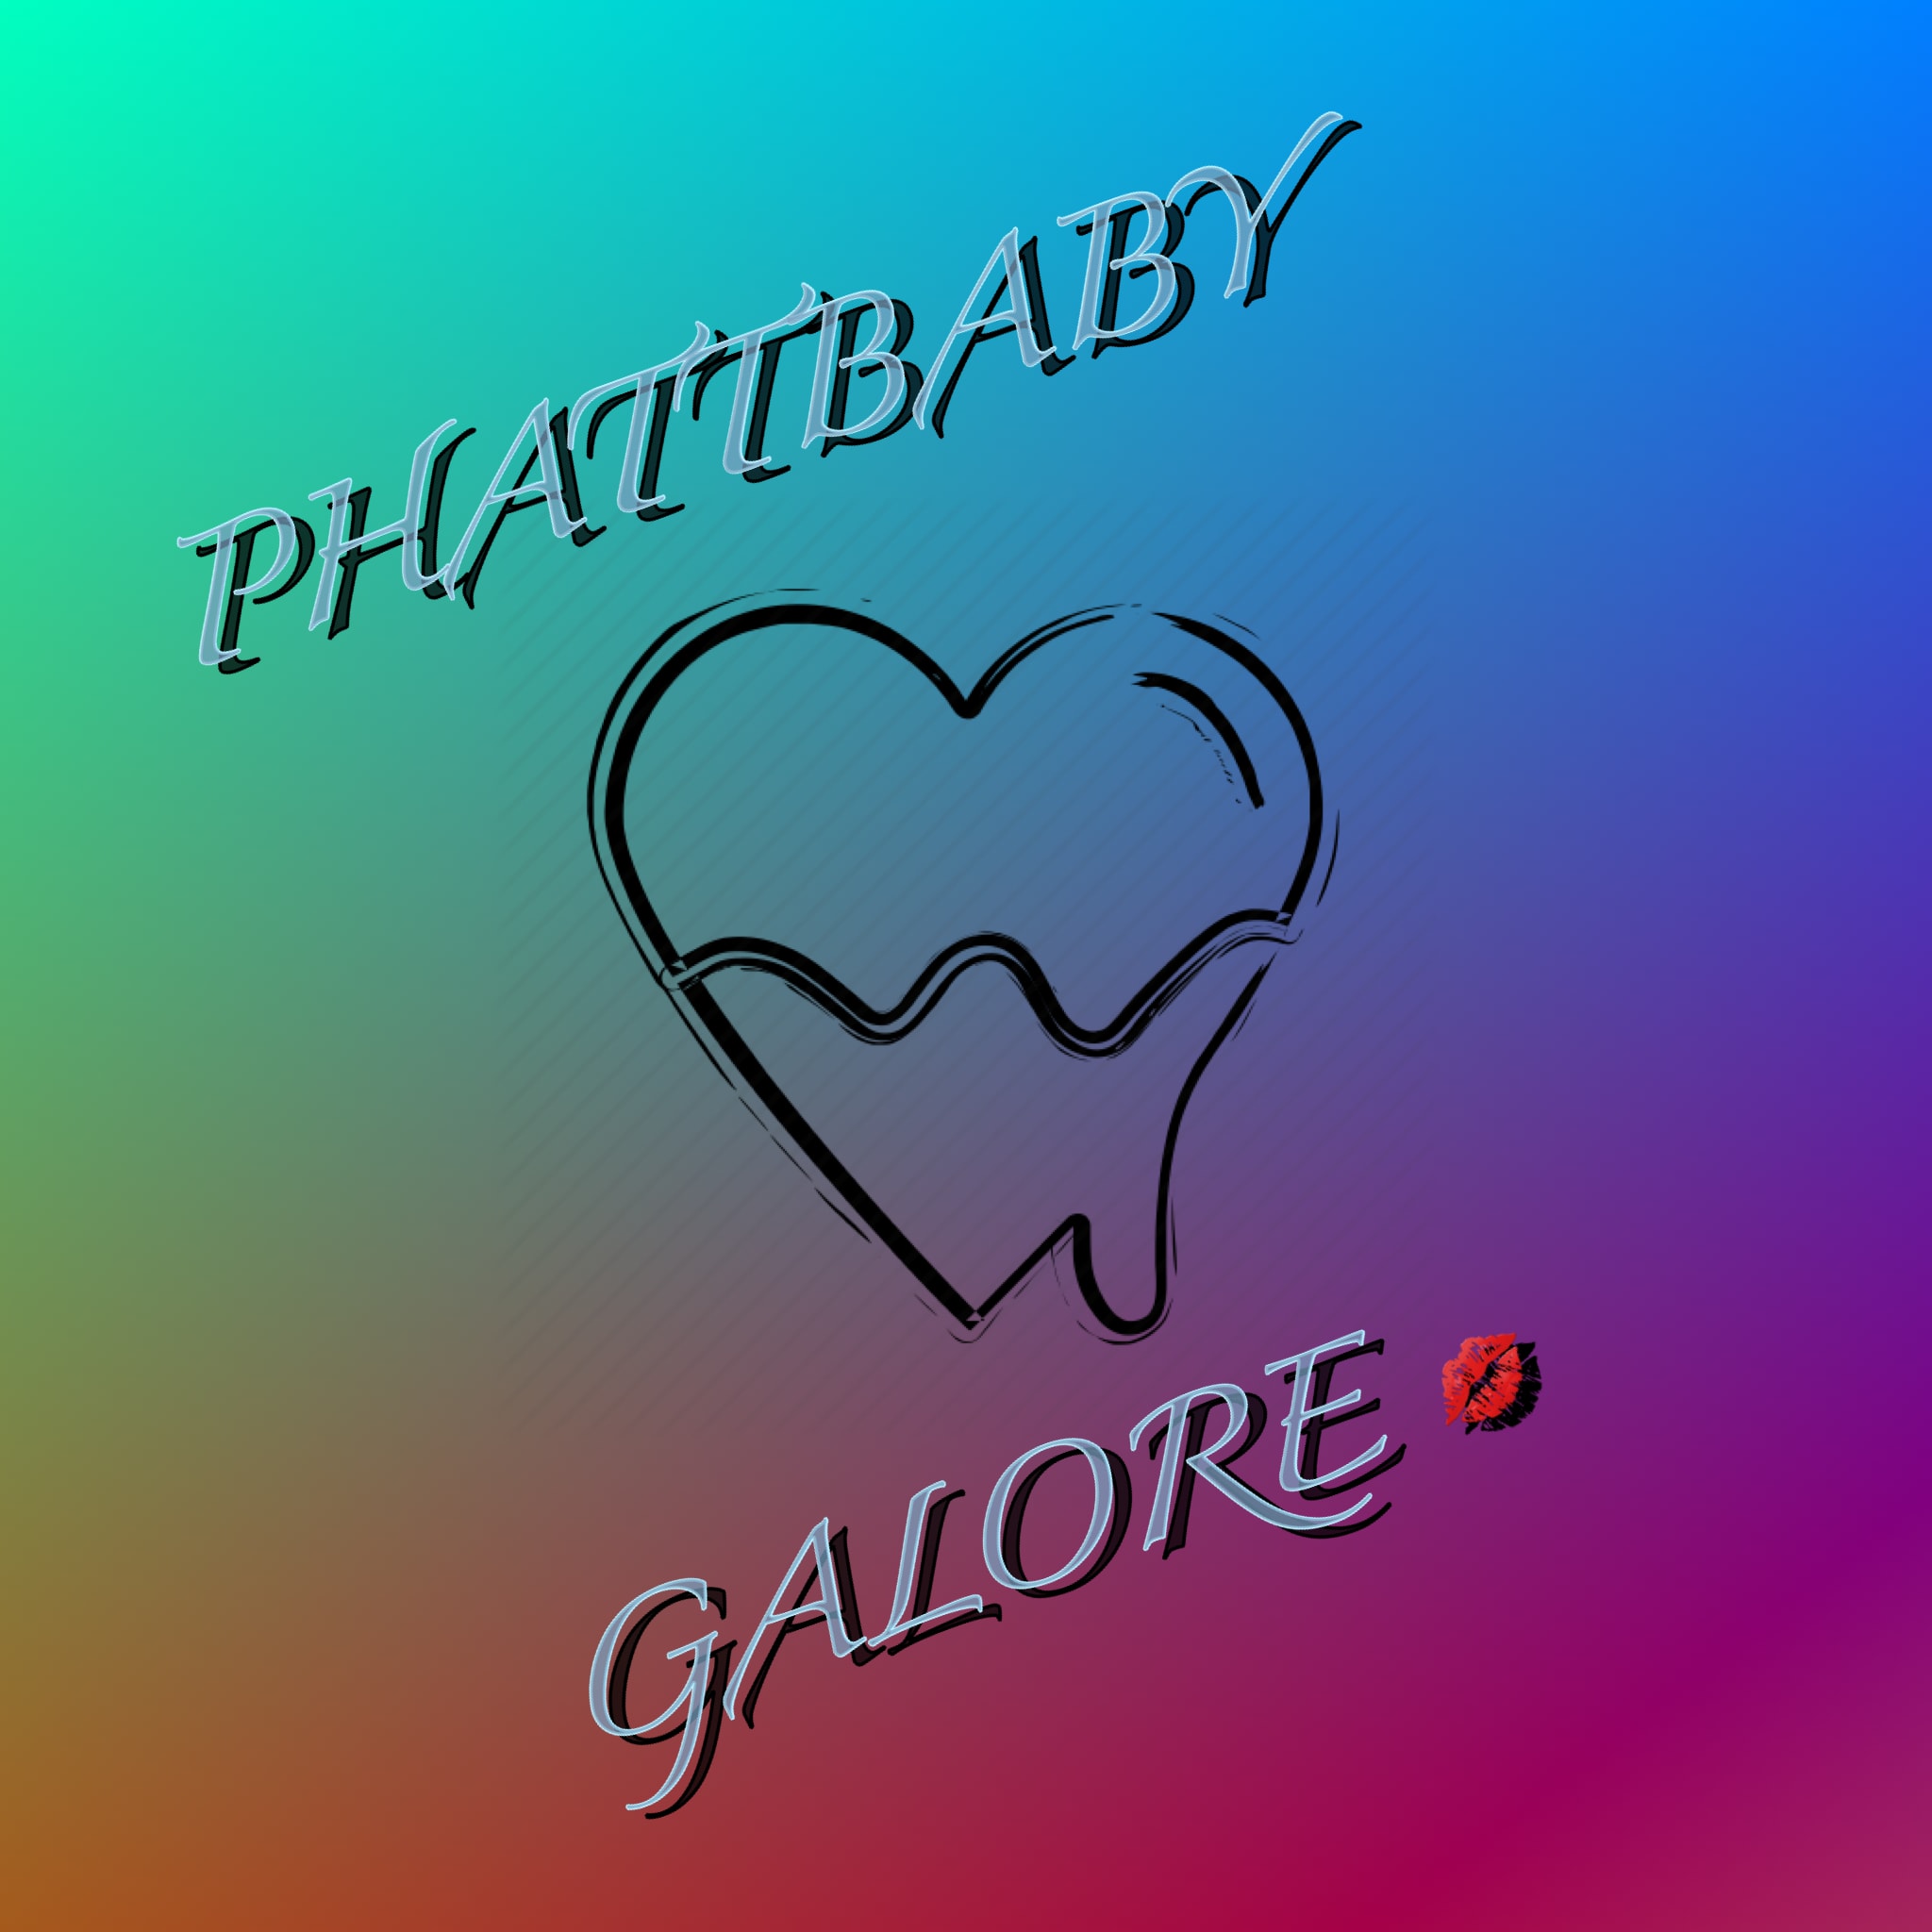 Phattbaby Galore 💋